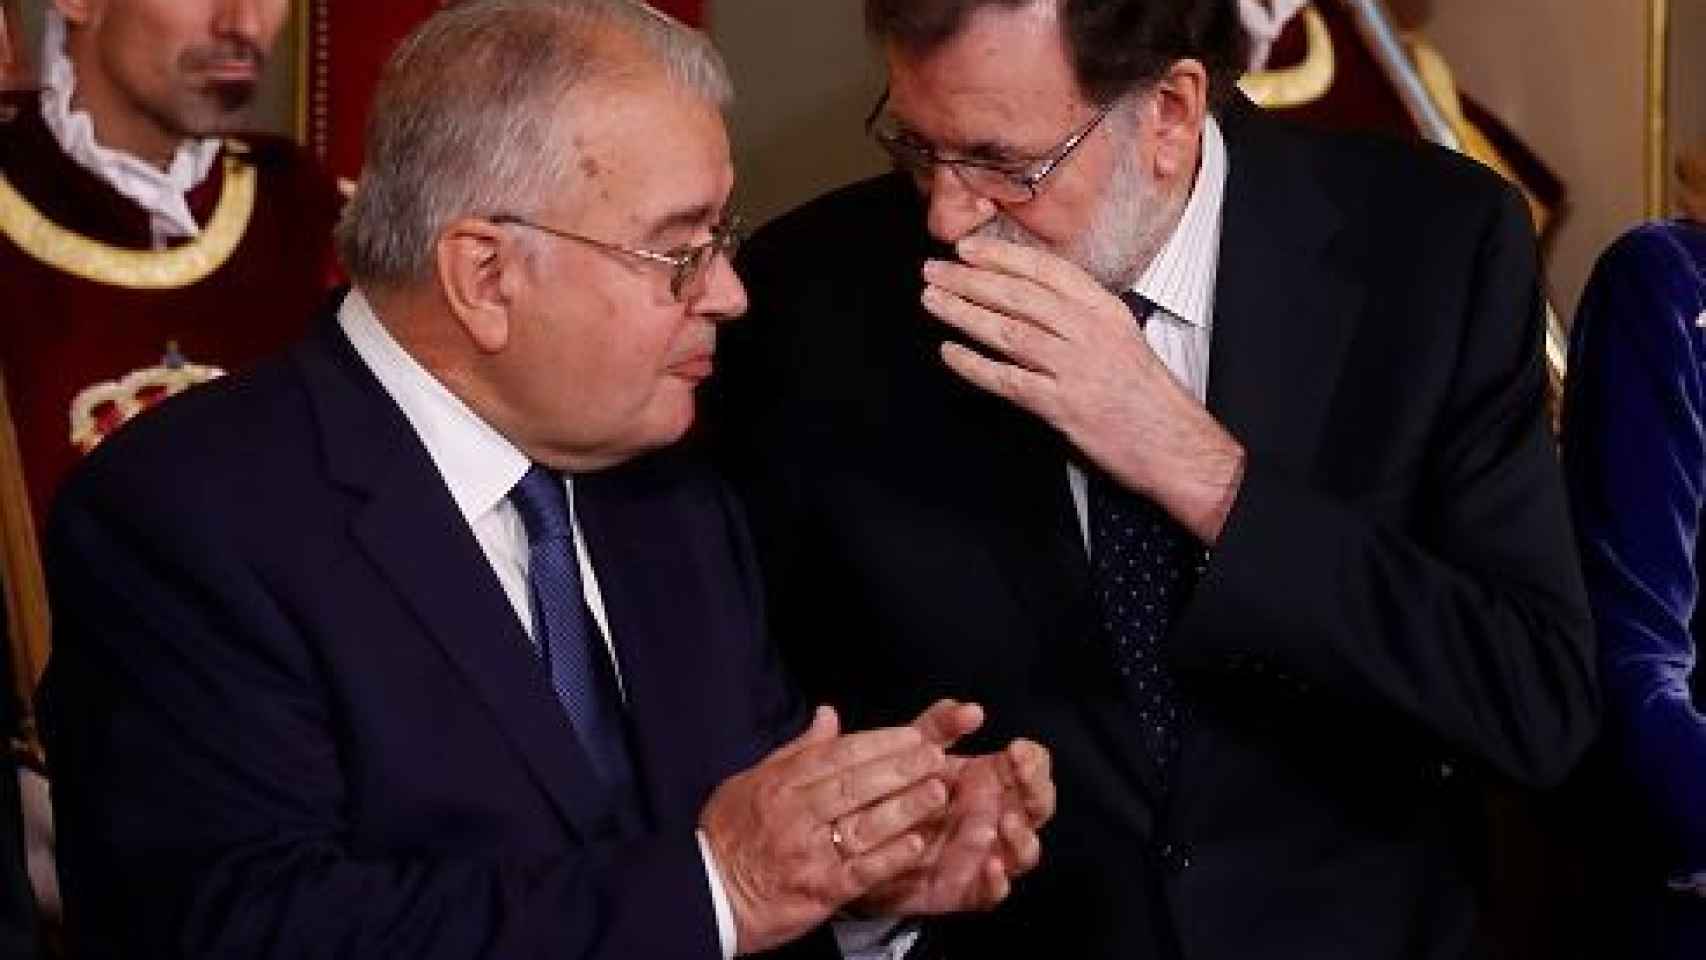 El presidente del Gobierno conversa con González Rivas en un acto oficial./